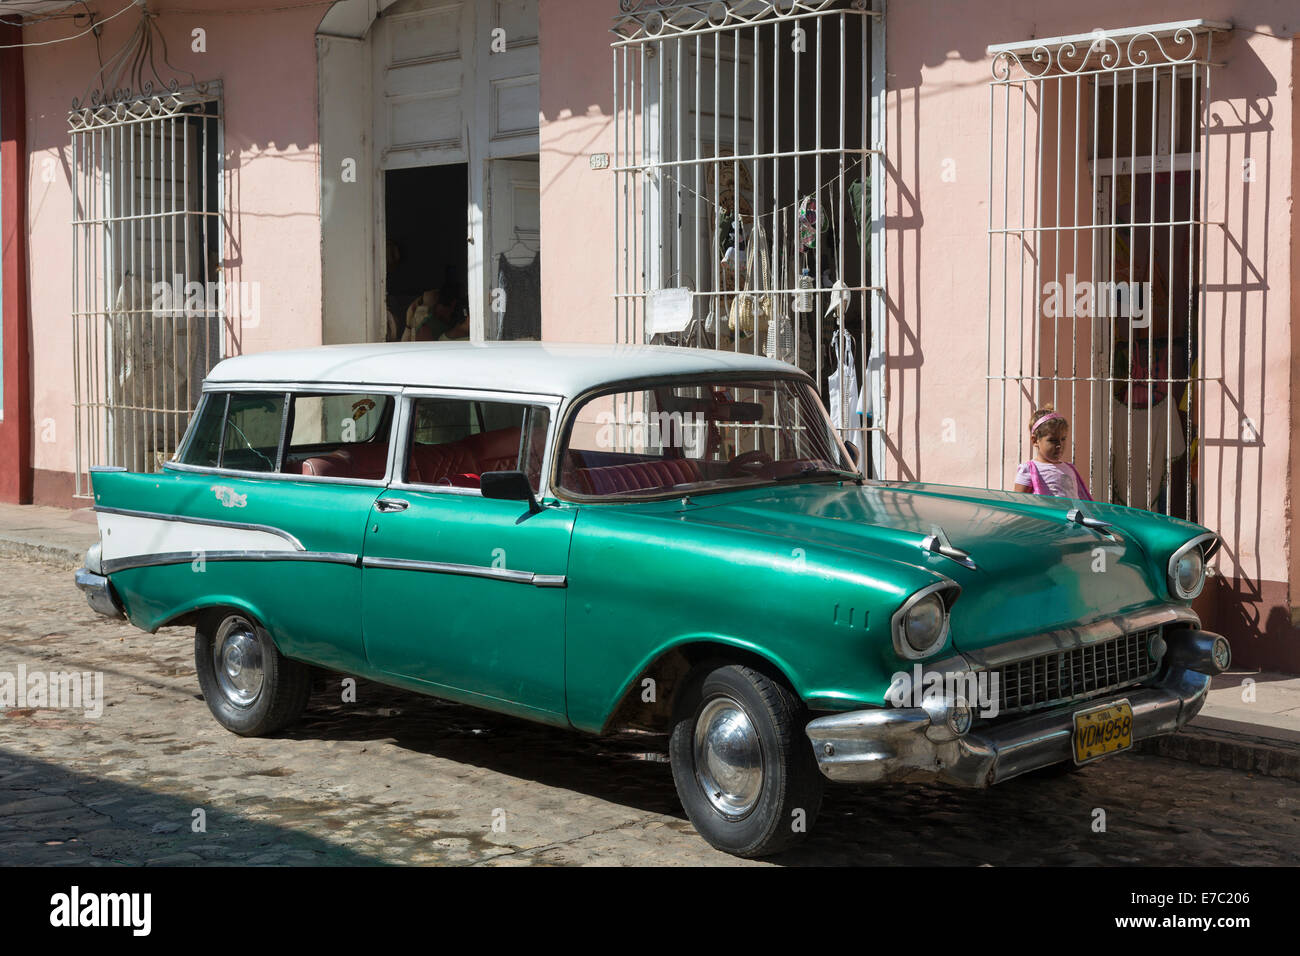 Vieille voiture des années 1950, La Havane, Cuba Banque D'Images